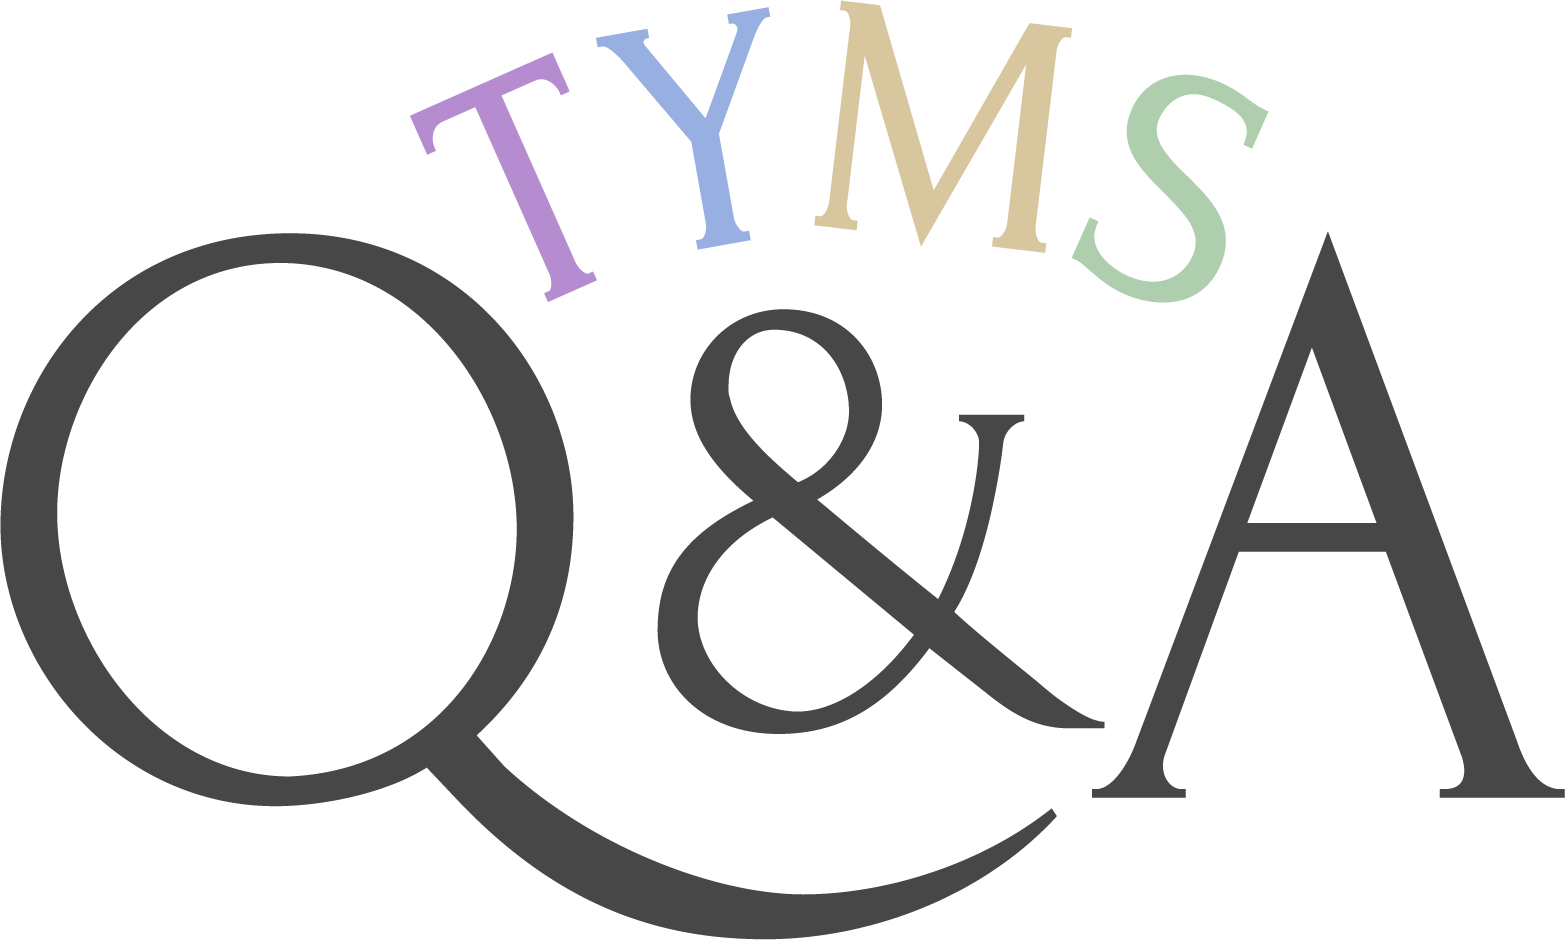 TYMS Q&A!